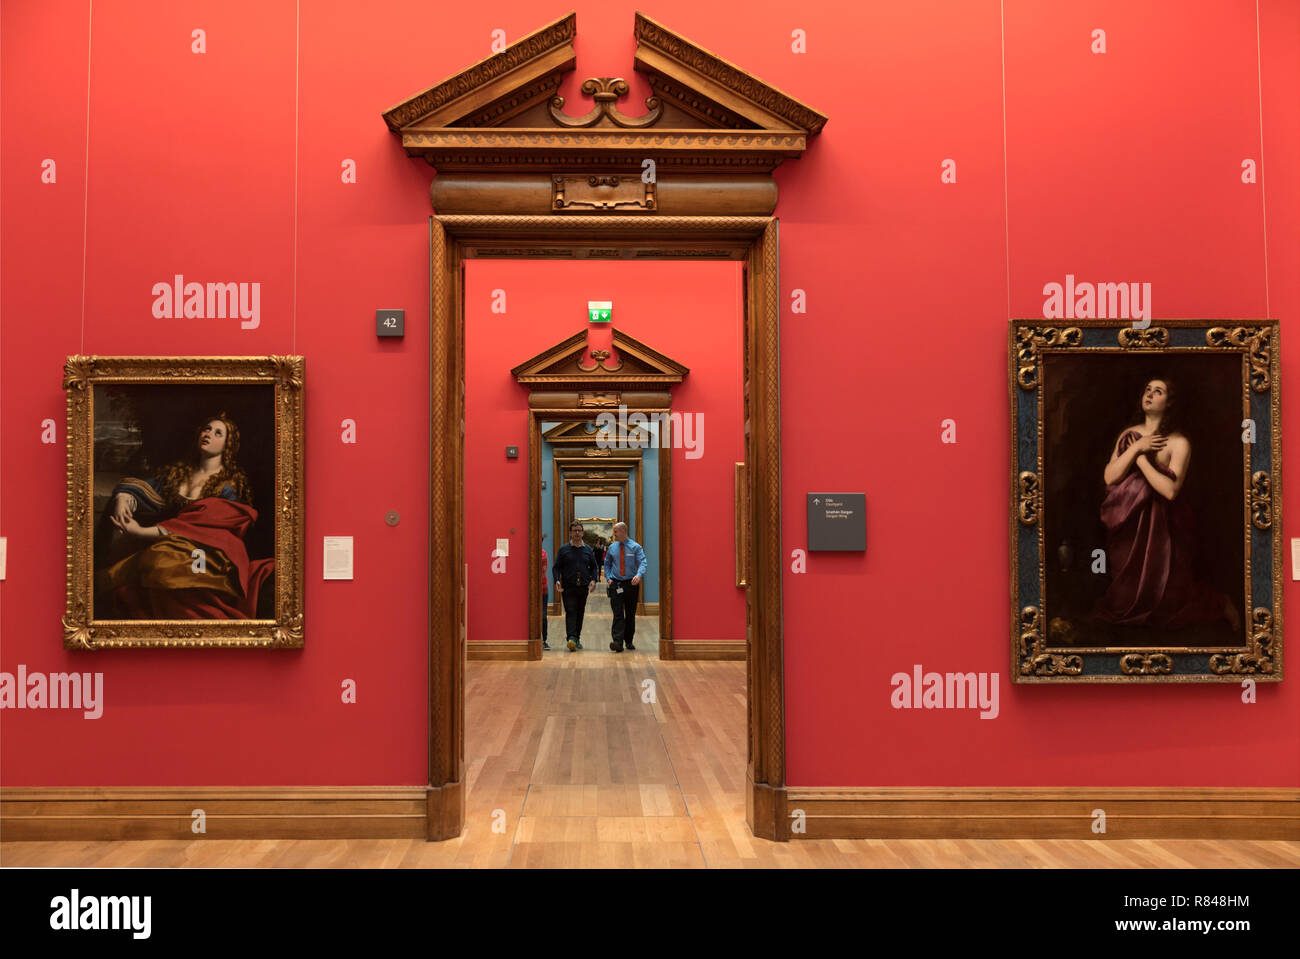 Irlanda, Dublino, National Gallery of Ireland, interni con opere d'arte e corridoio riassato Foto Stock